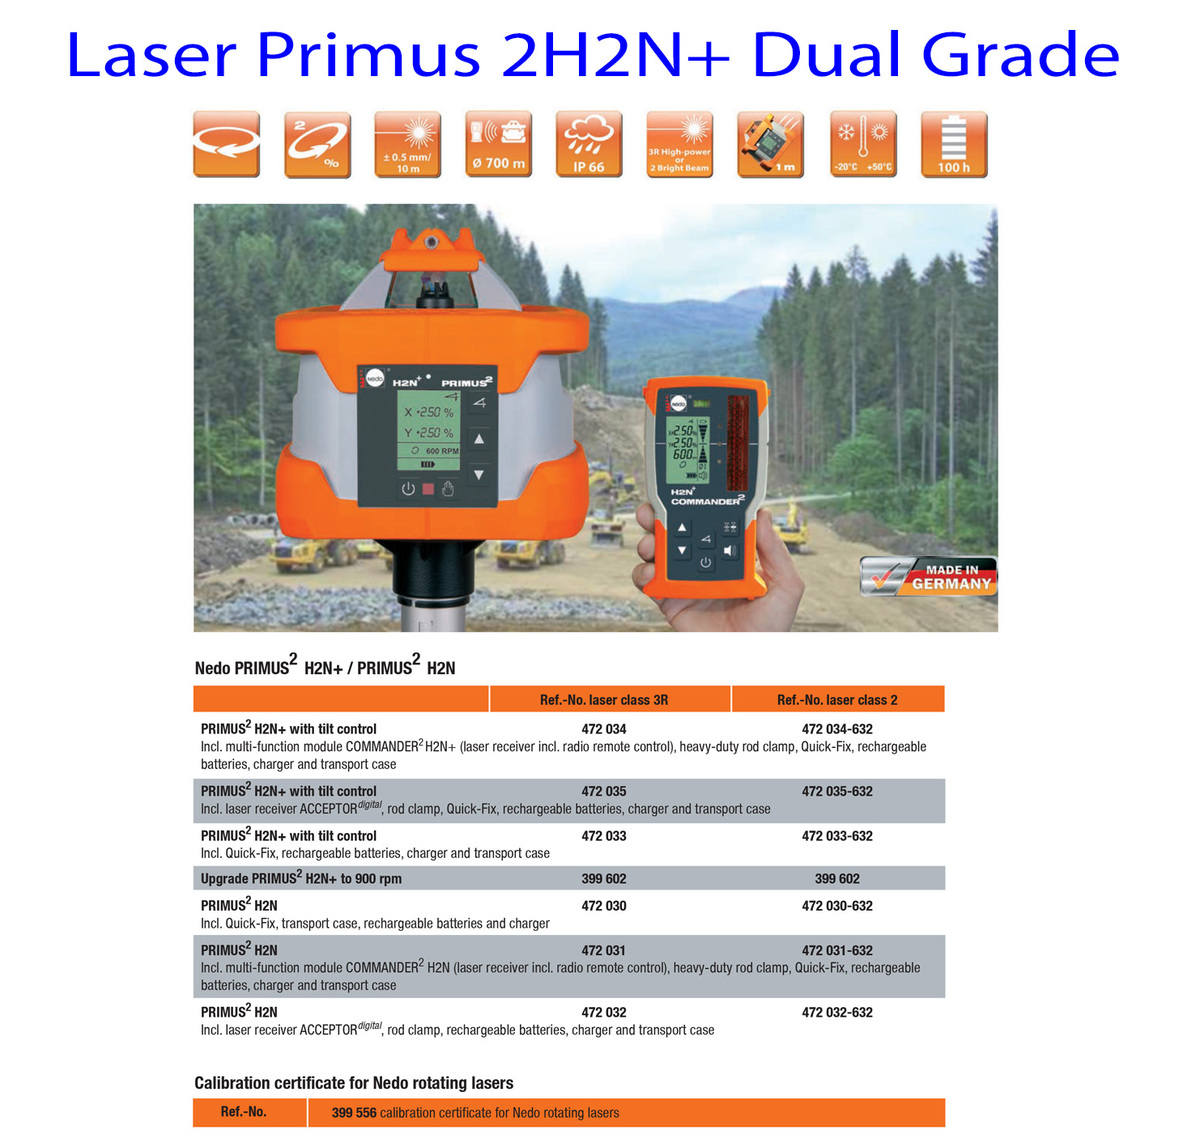 Laser-Primus-2H2Nplus-Dual-Grade-info-1.